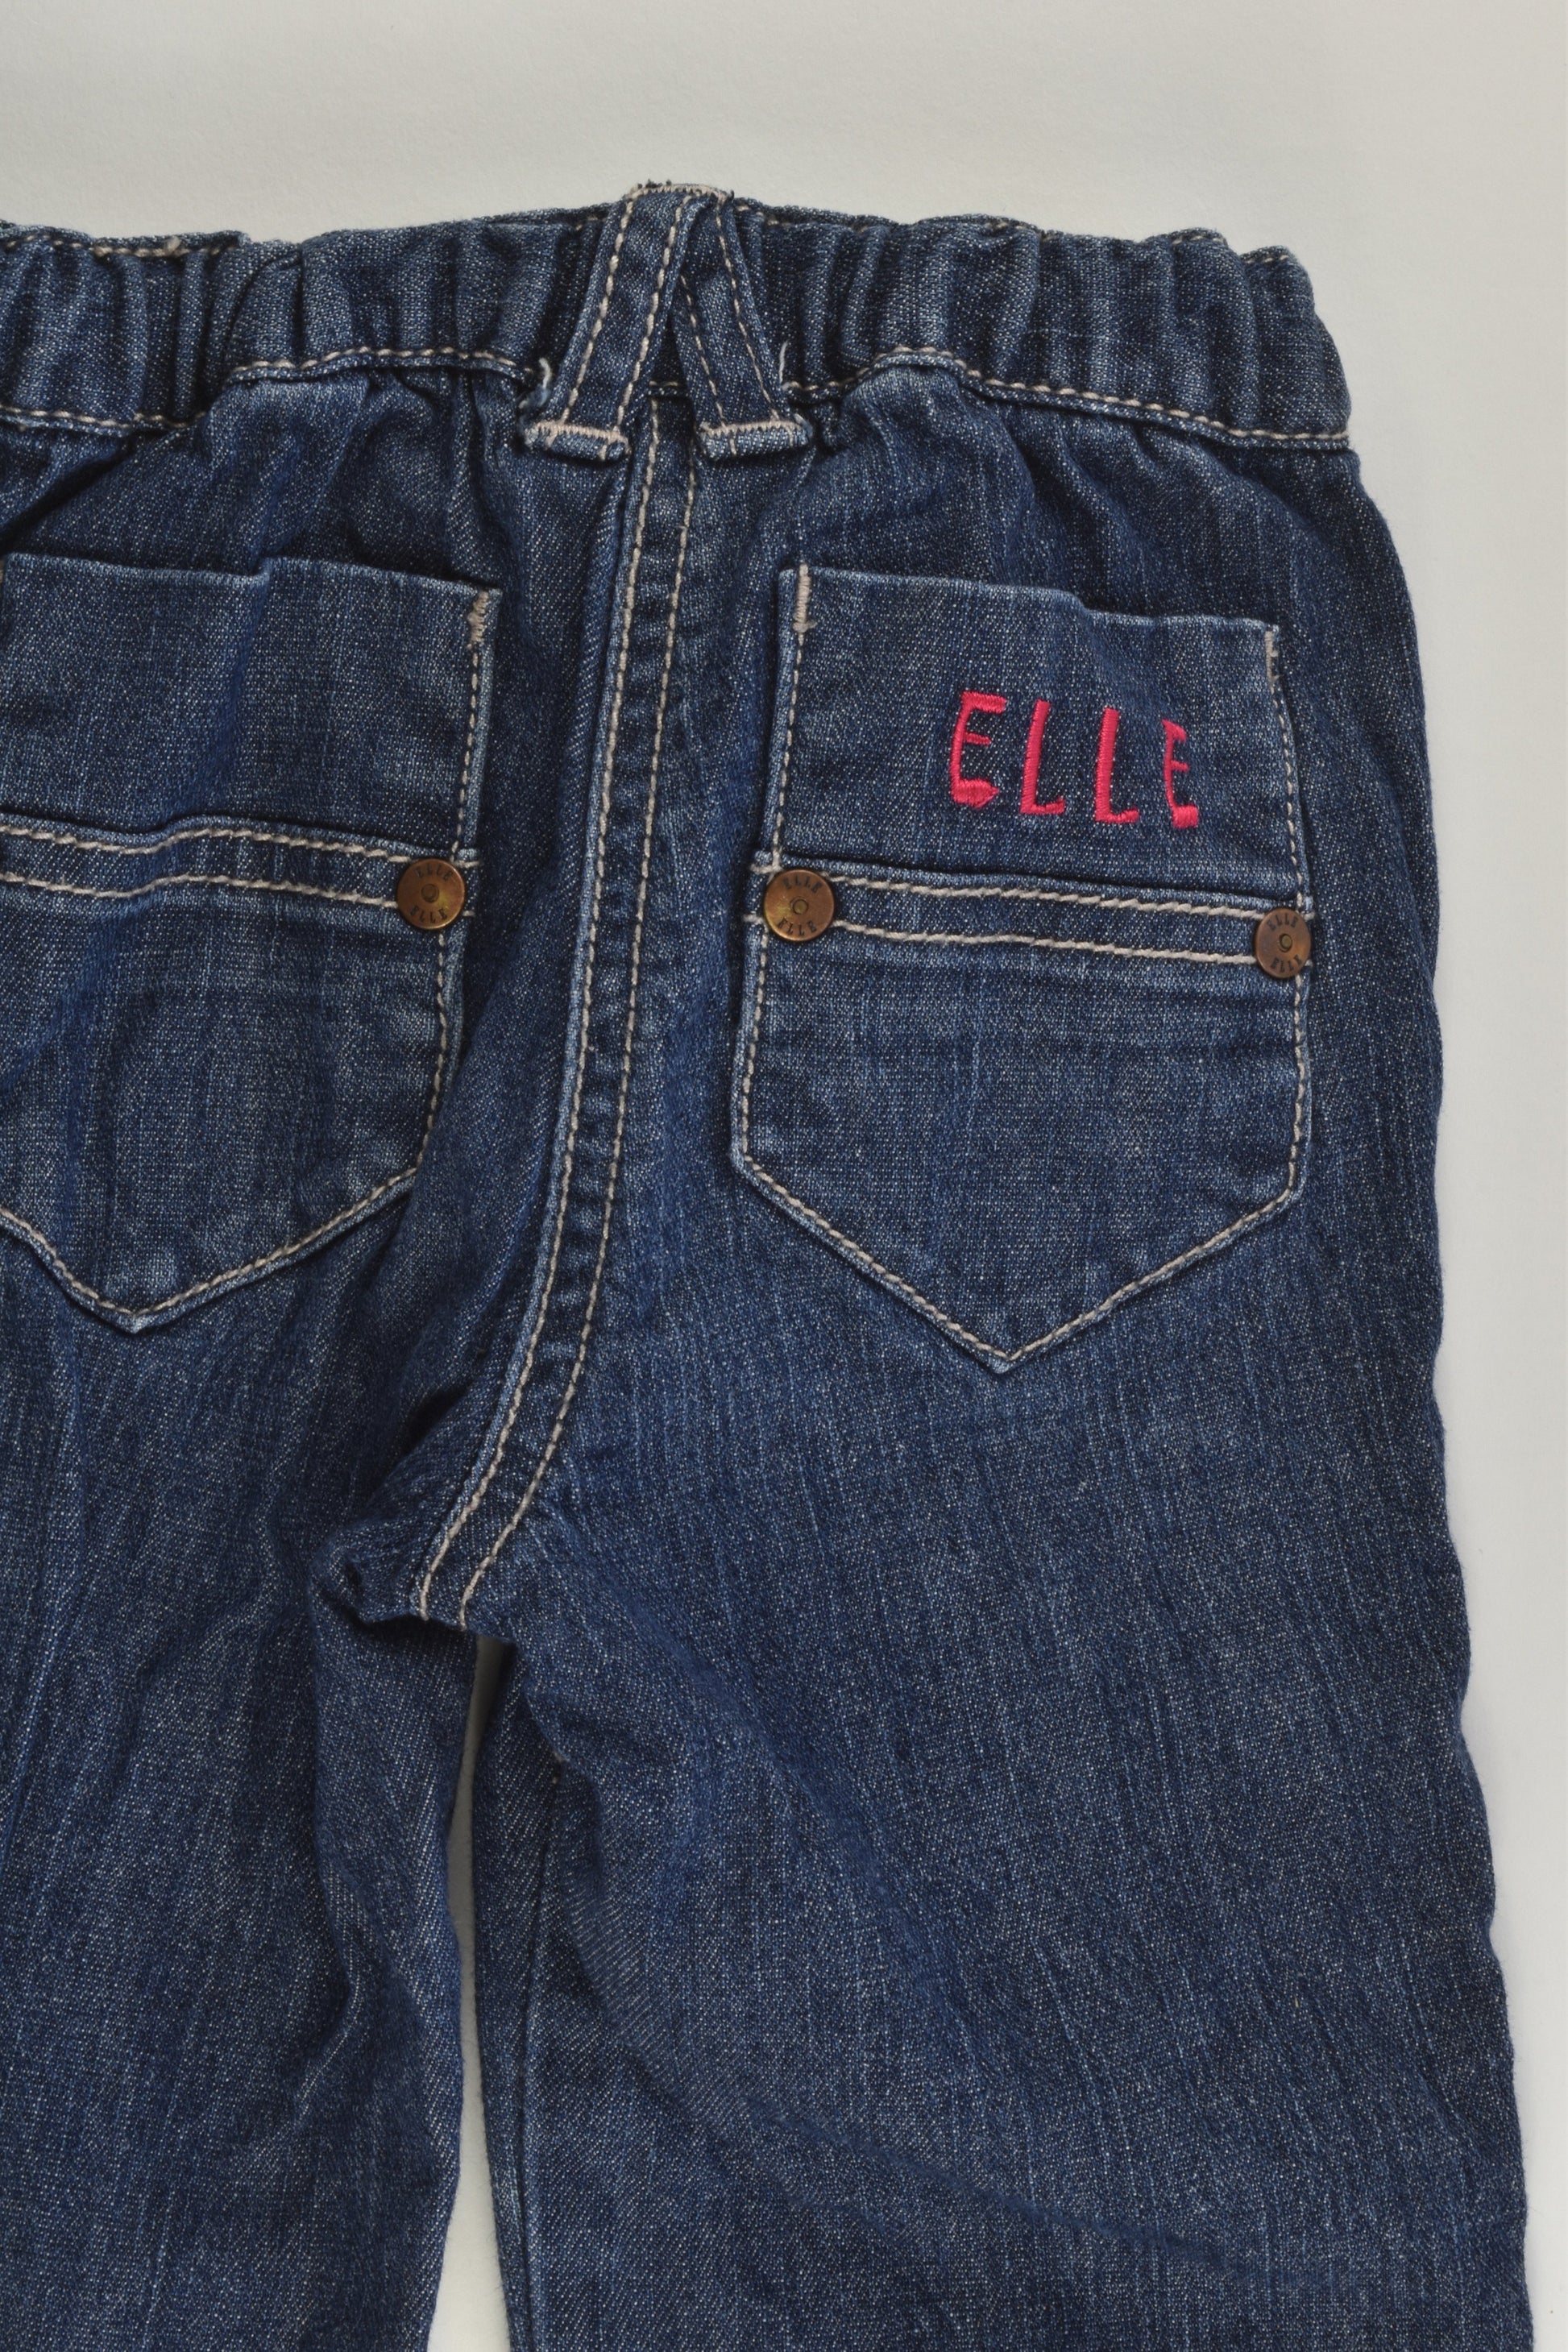 Elle Size 0 (12 months) Denim Pants